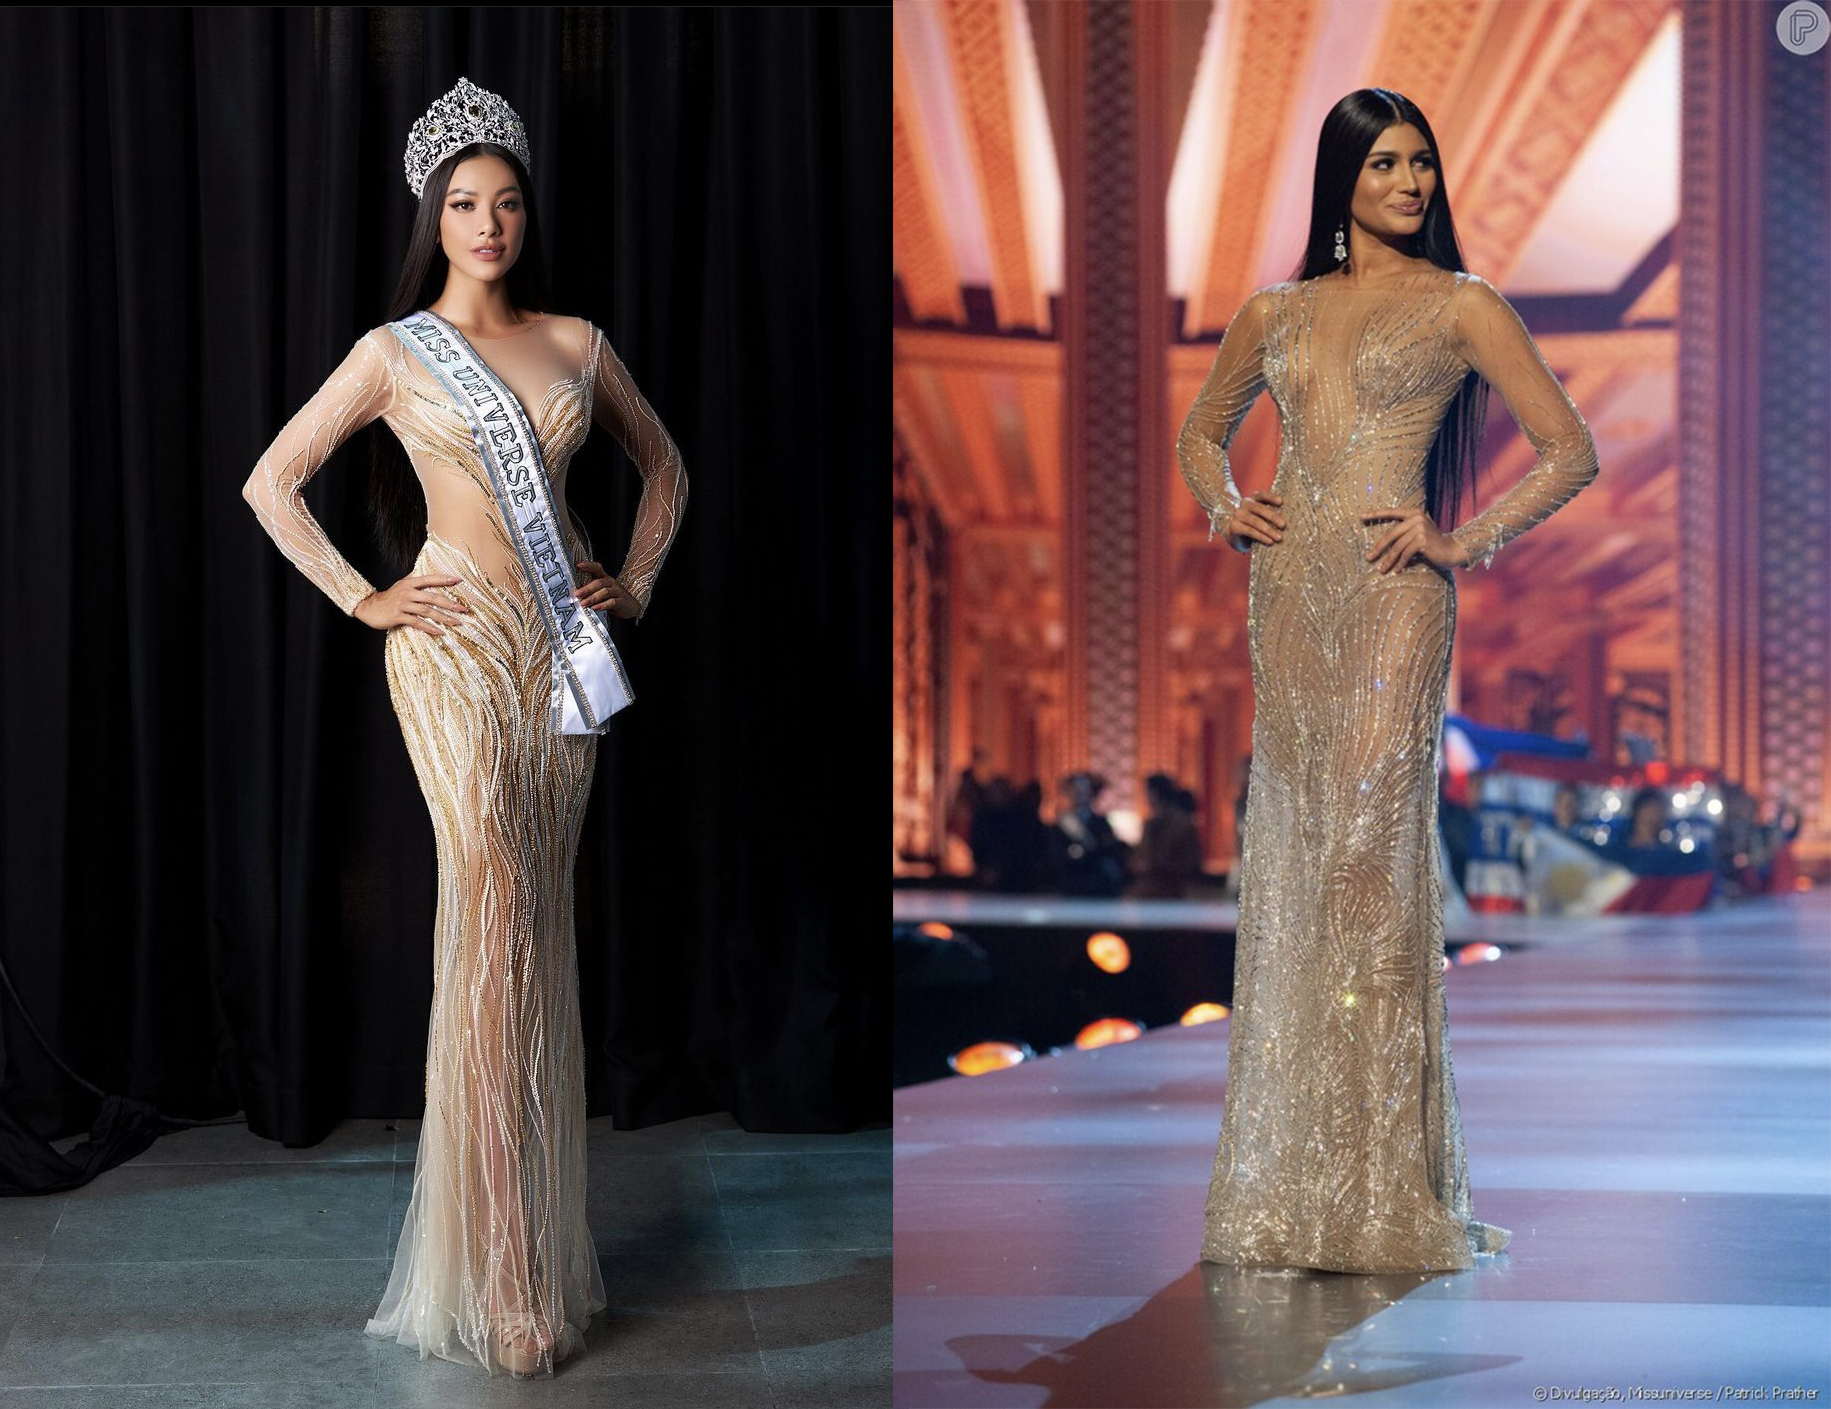 Từ mái tóc dài, duỗi thẳng, make-up sắc sảo đến chiếc váy đuôi cá xuyên thấu của Kim Duyên đều đã được Sthefany Gutierrez thể hiện thành công trong cuộc thi Miss Universe 2018.